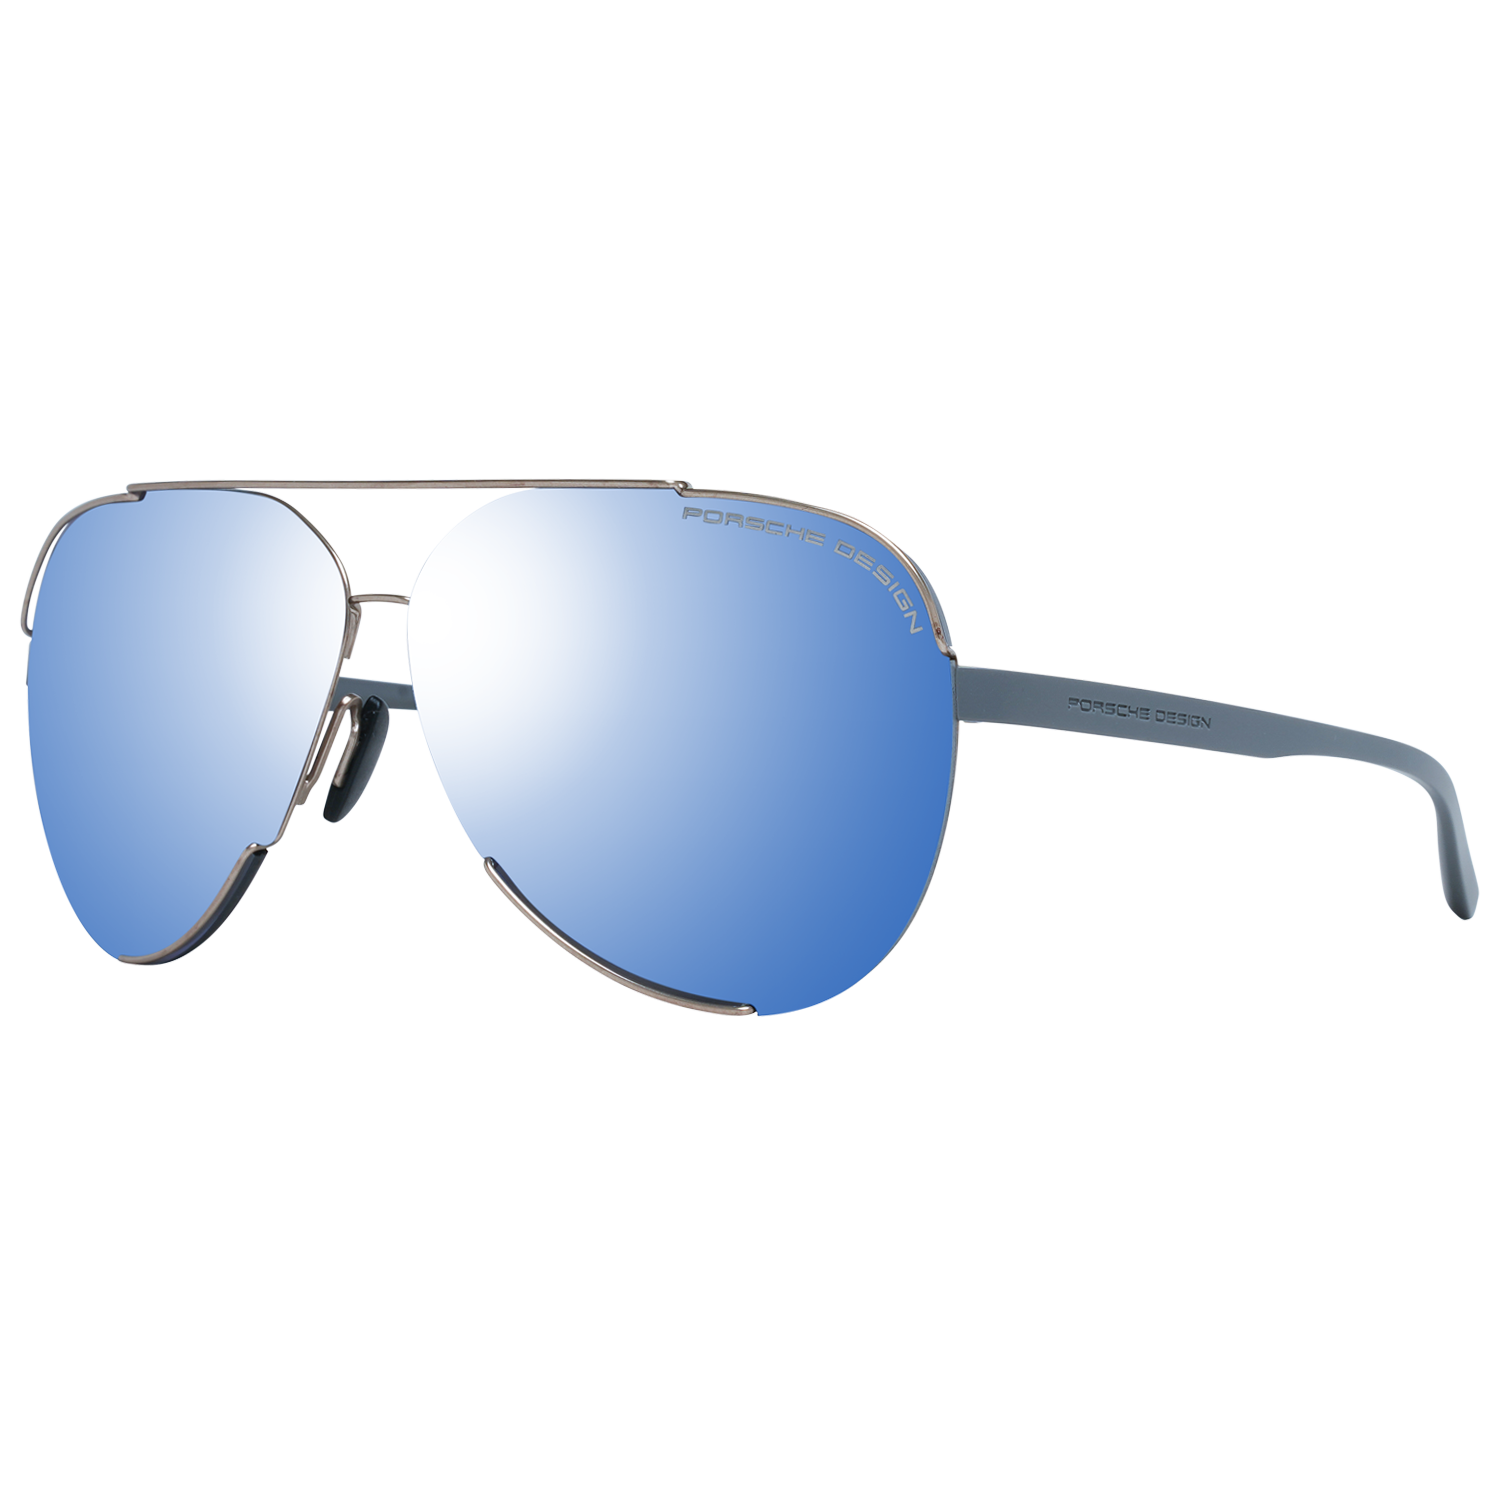 Porsche Design Sunglasses Porsche Design Sunglasses P8682 D 64 Mirrored Eyeglasses Eyewear UK USA Australia 